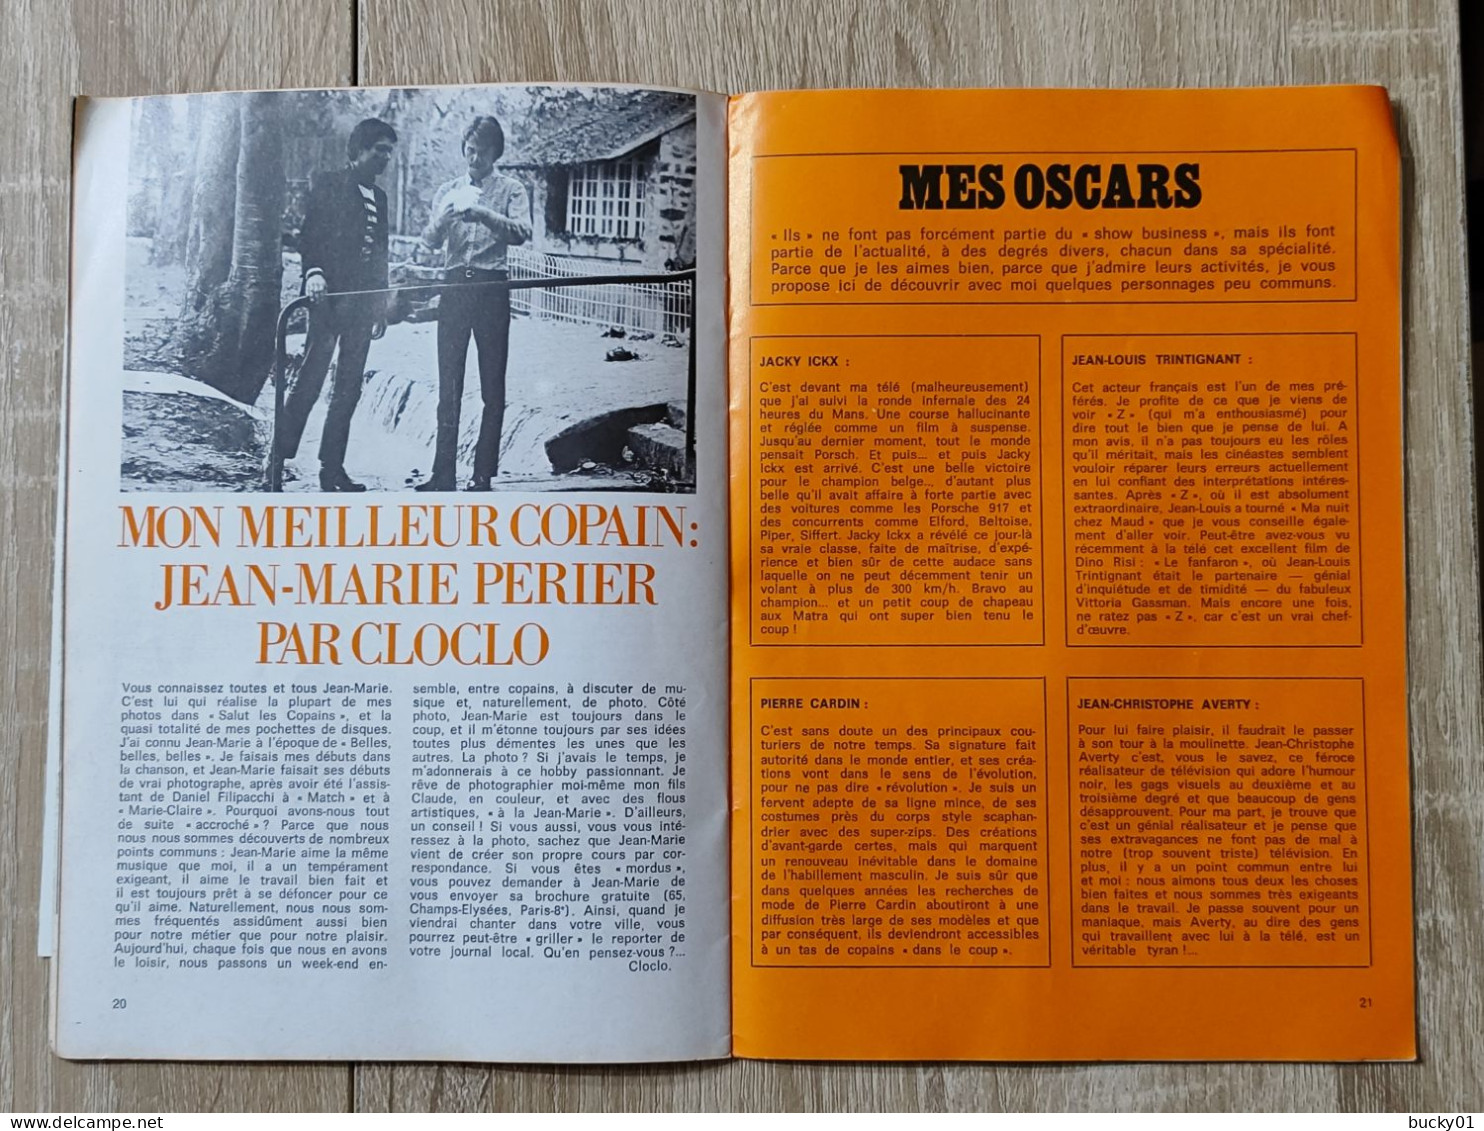 TRES RARE - FLECHE N°3 - LE JOURNAL DE CLAUDE FRANCOIS - 1969 - Musique